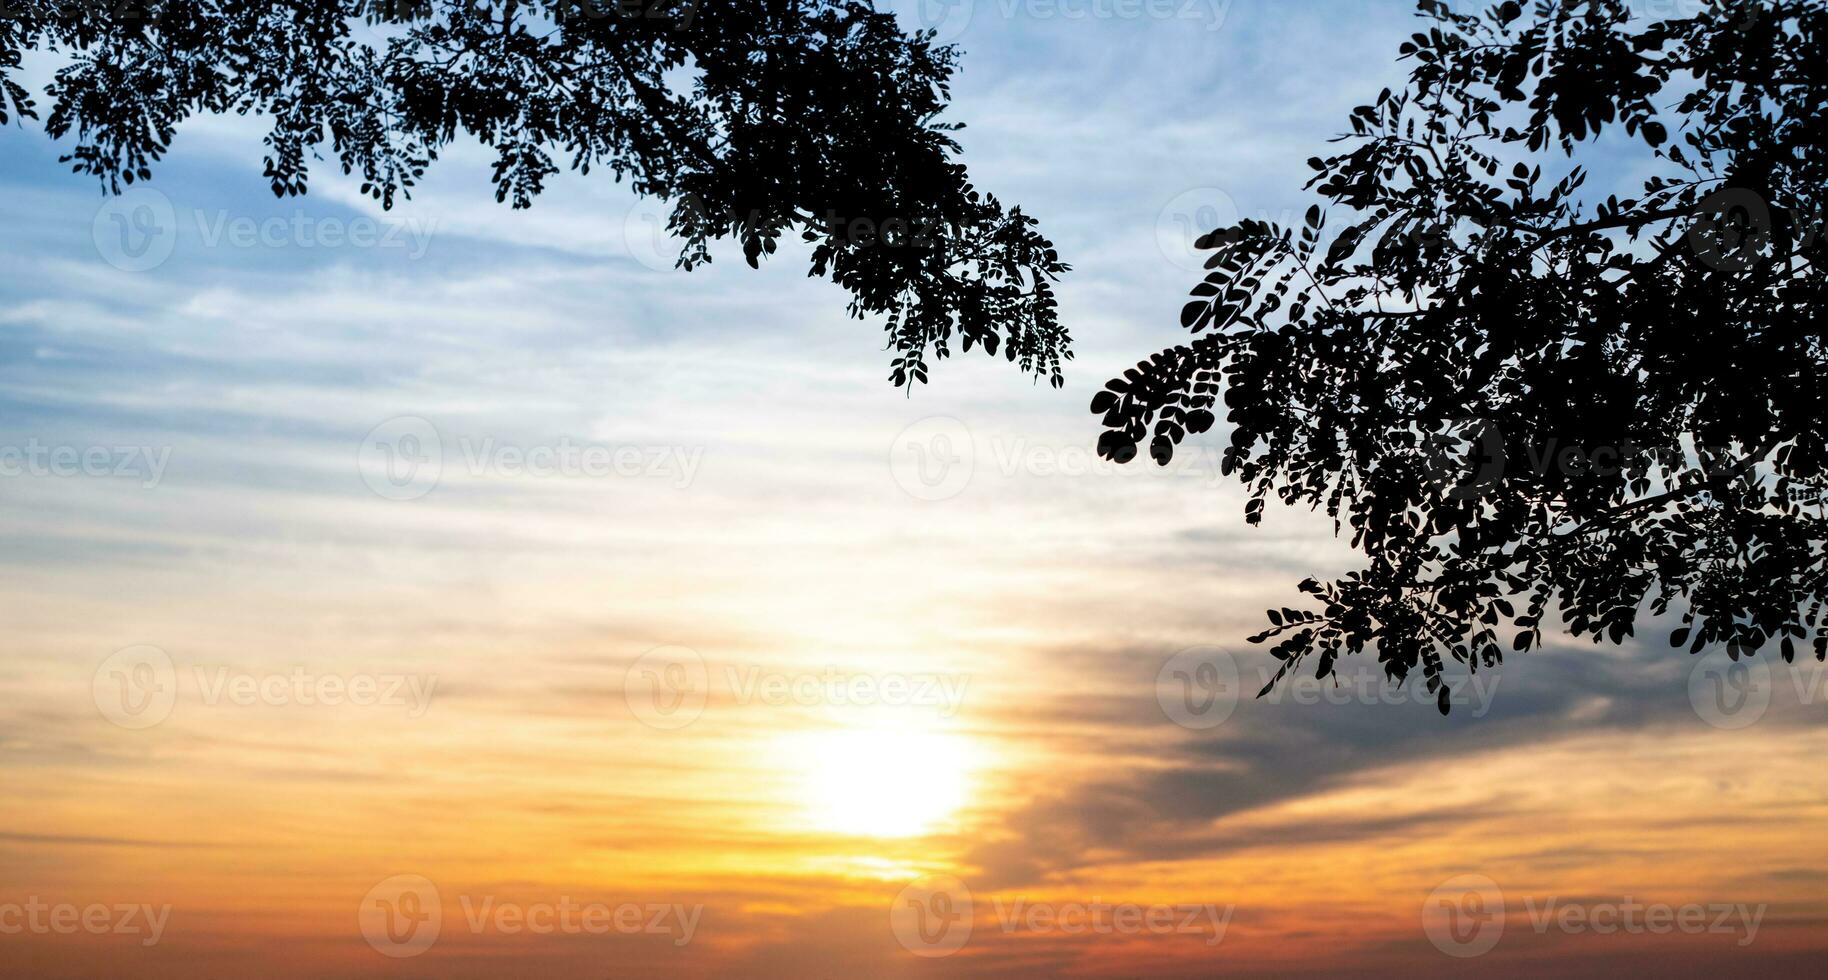 silueta de hoja en árbol rama y borroso de naranja puesta de sol naturaleza fondo, tomar en noche, Mañana cielo, romance sentimiento, lento vida foto